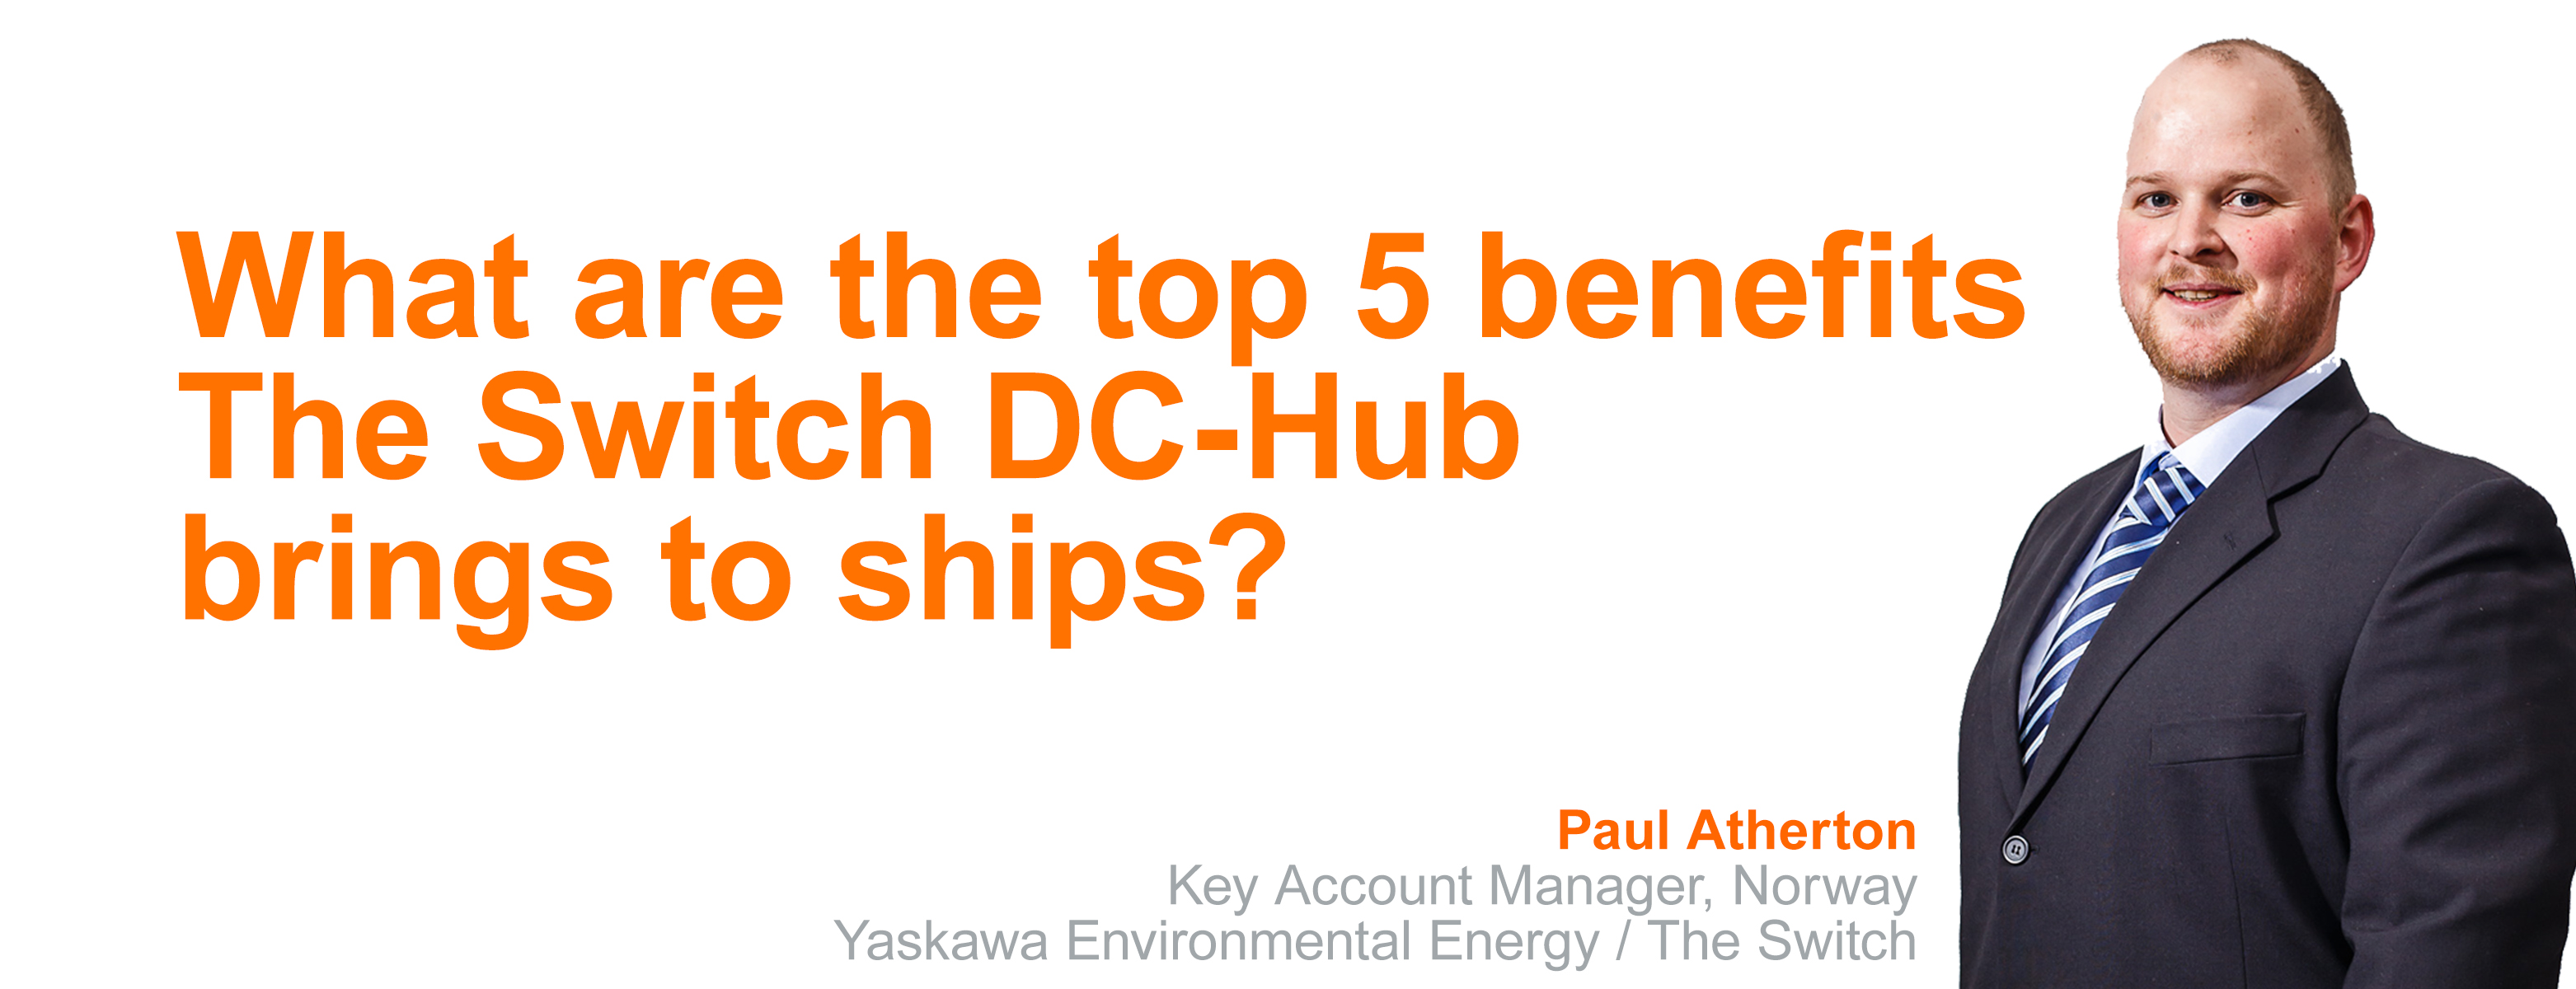 Paul Atherton - 5 benefits of DC-Hub